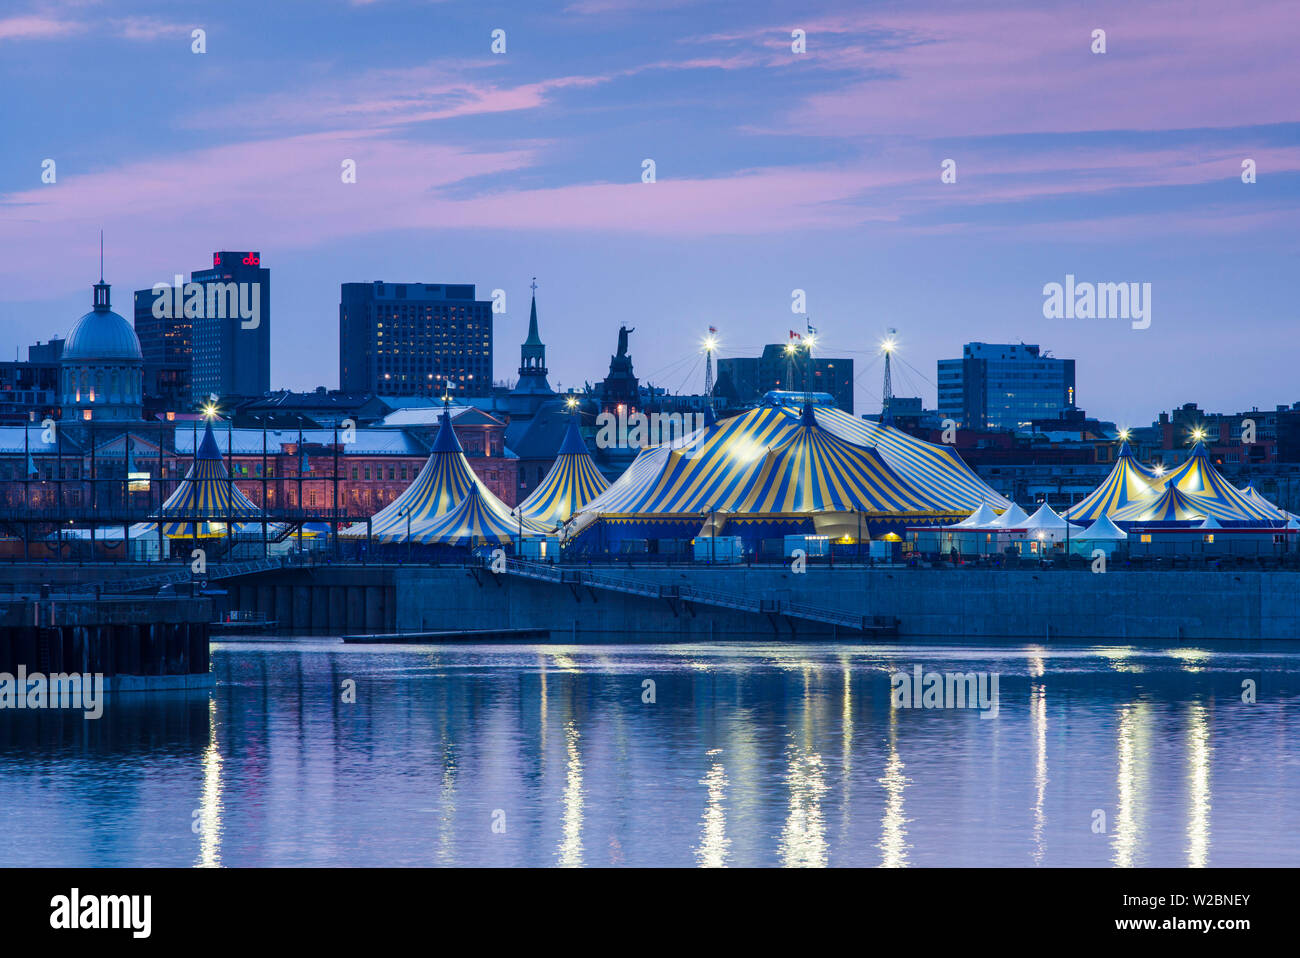 Canadá, Quebec, Montreal, Palais des Congres de Montreal, centro de convenciones, el viejo puerto y la Carpa del circo desde el río San Lorenzo. Foto de stock